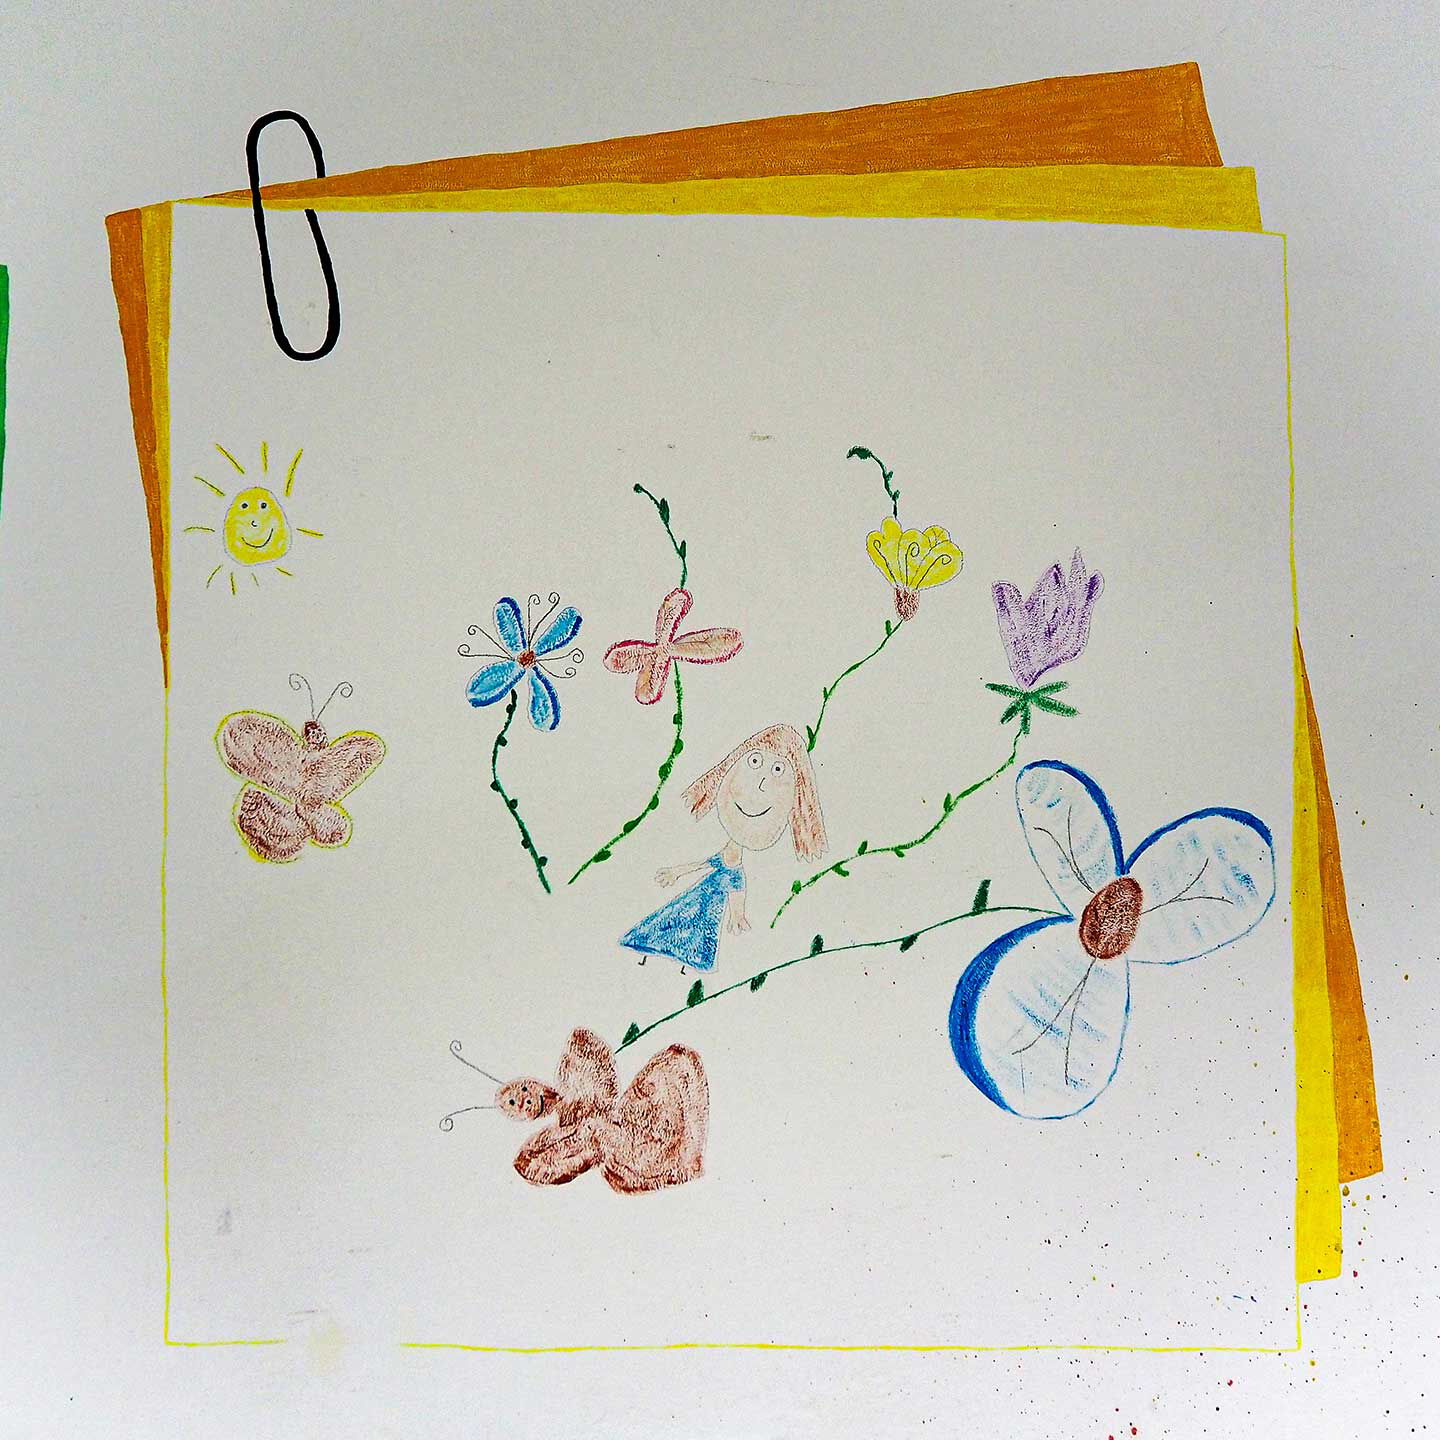 Ein Bild von einem Mädchen mit Blumen und Schmetterlingen ist an die Wand gezeichnet worden.